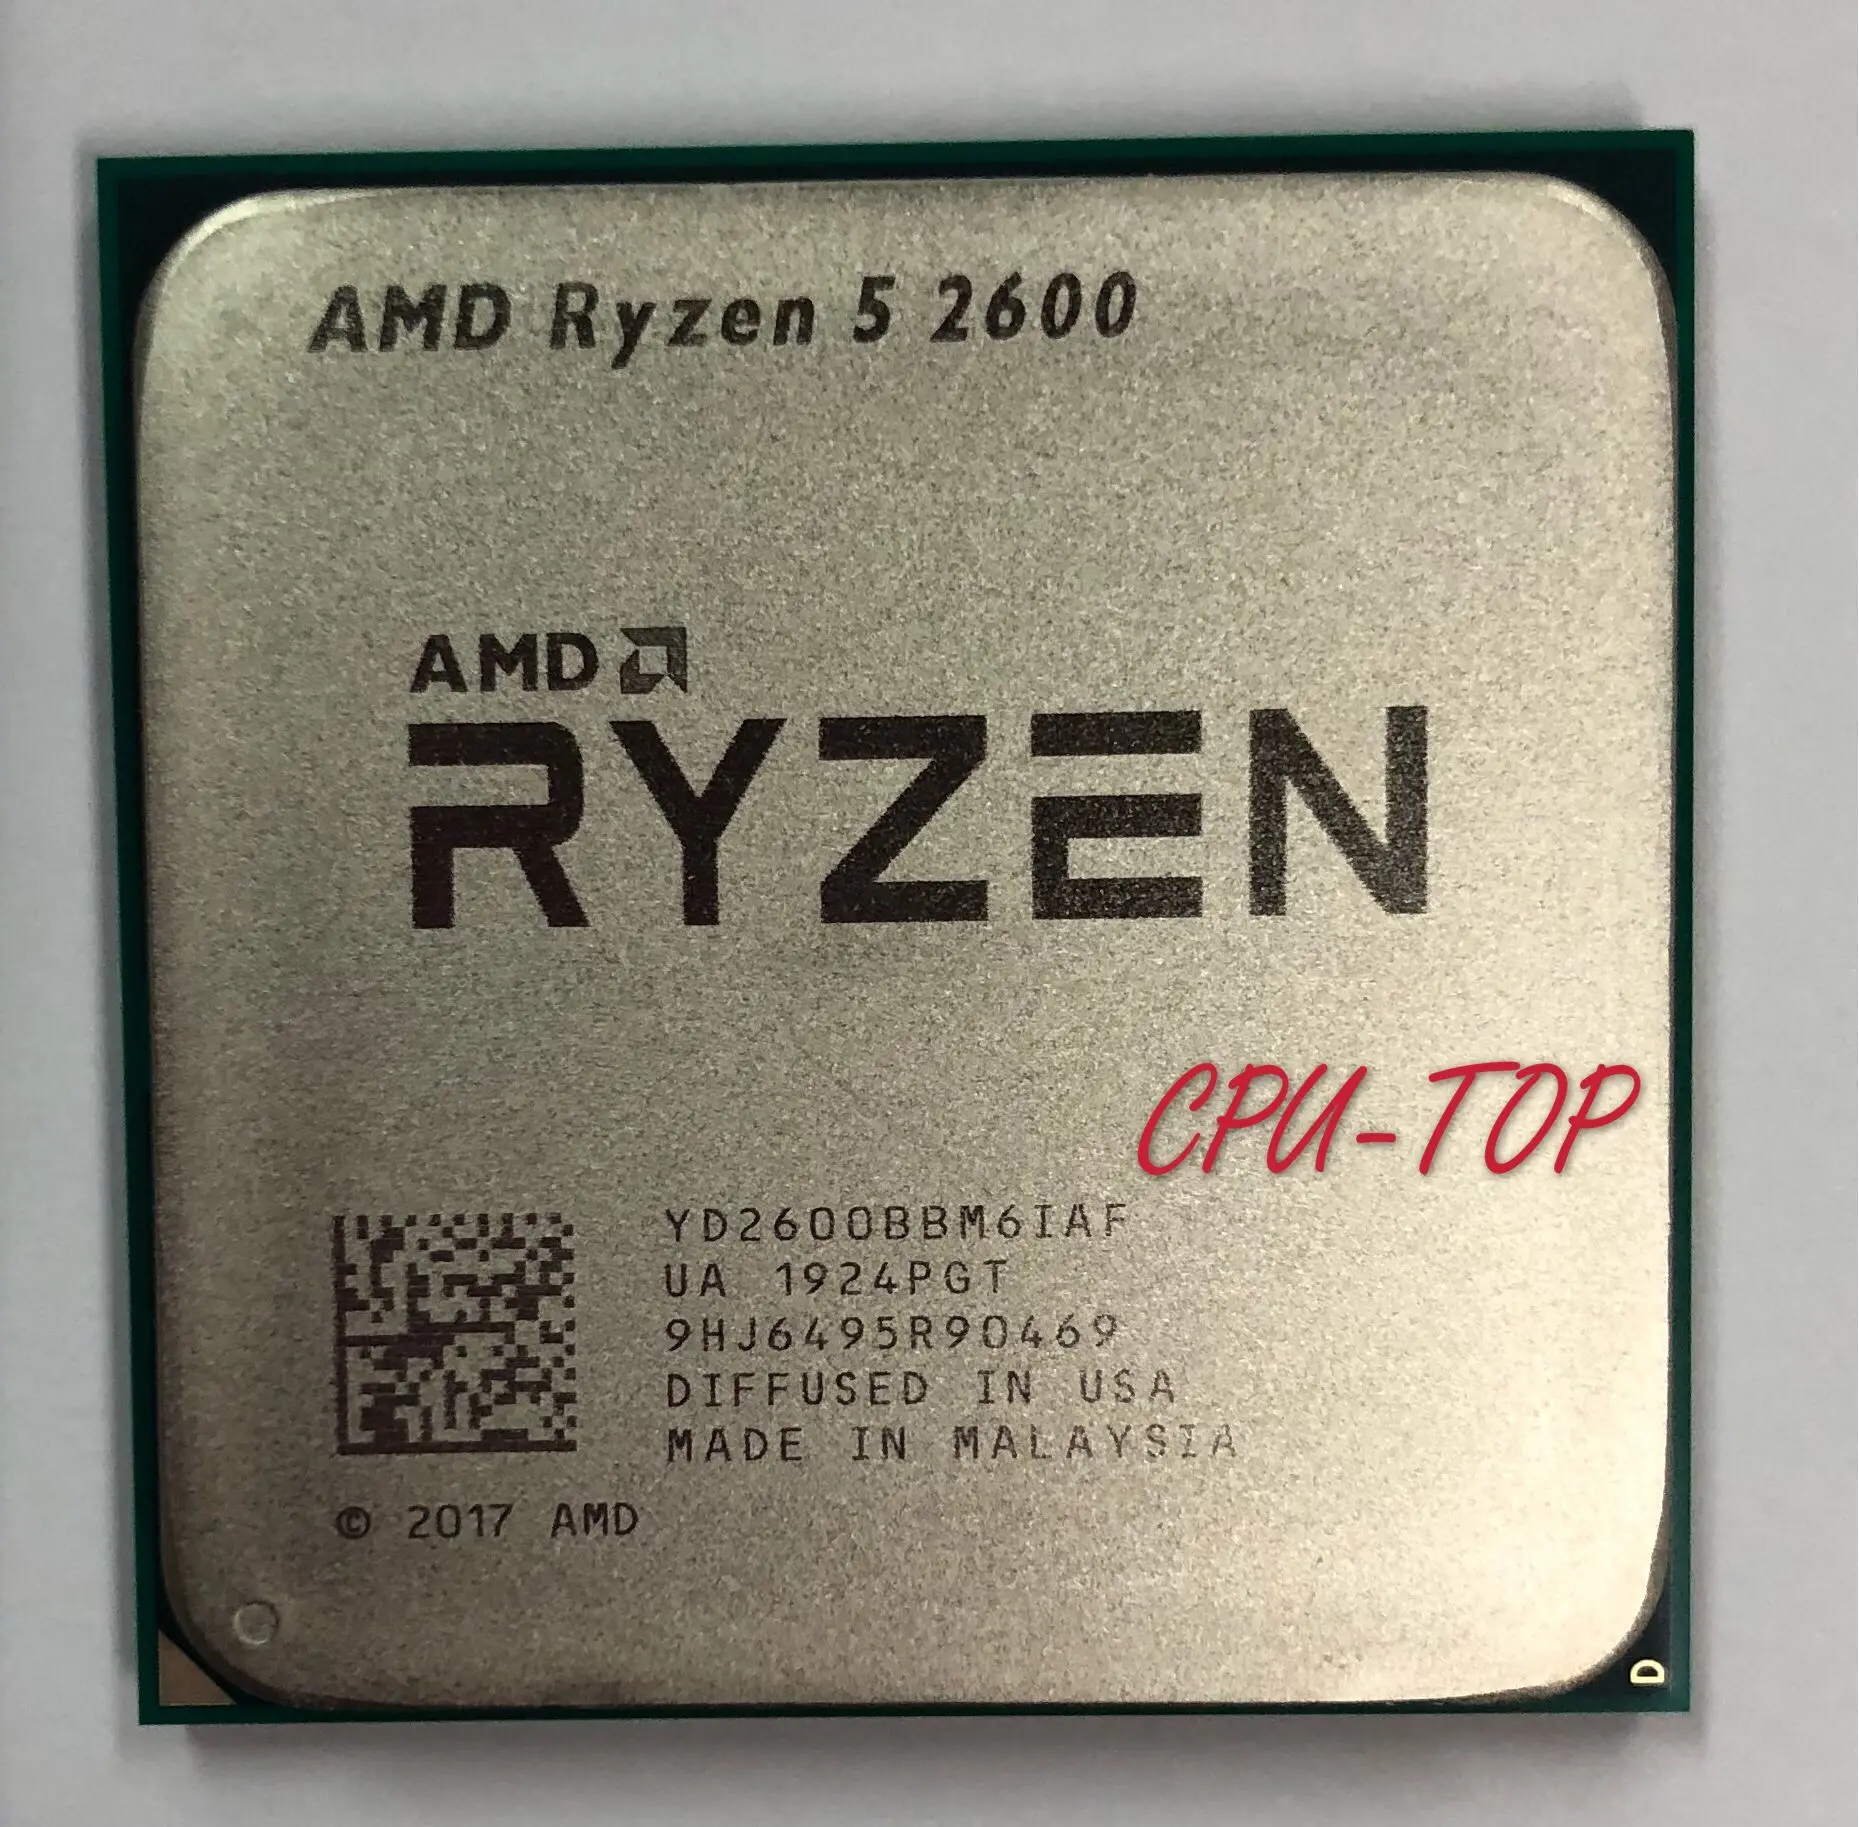 

AMD Ryzen 5 2600 R5 2600 3.4 GHz Six-Core Twelve-Core 65W CPU Processor YD2600BBM6IAF Socket AM4